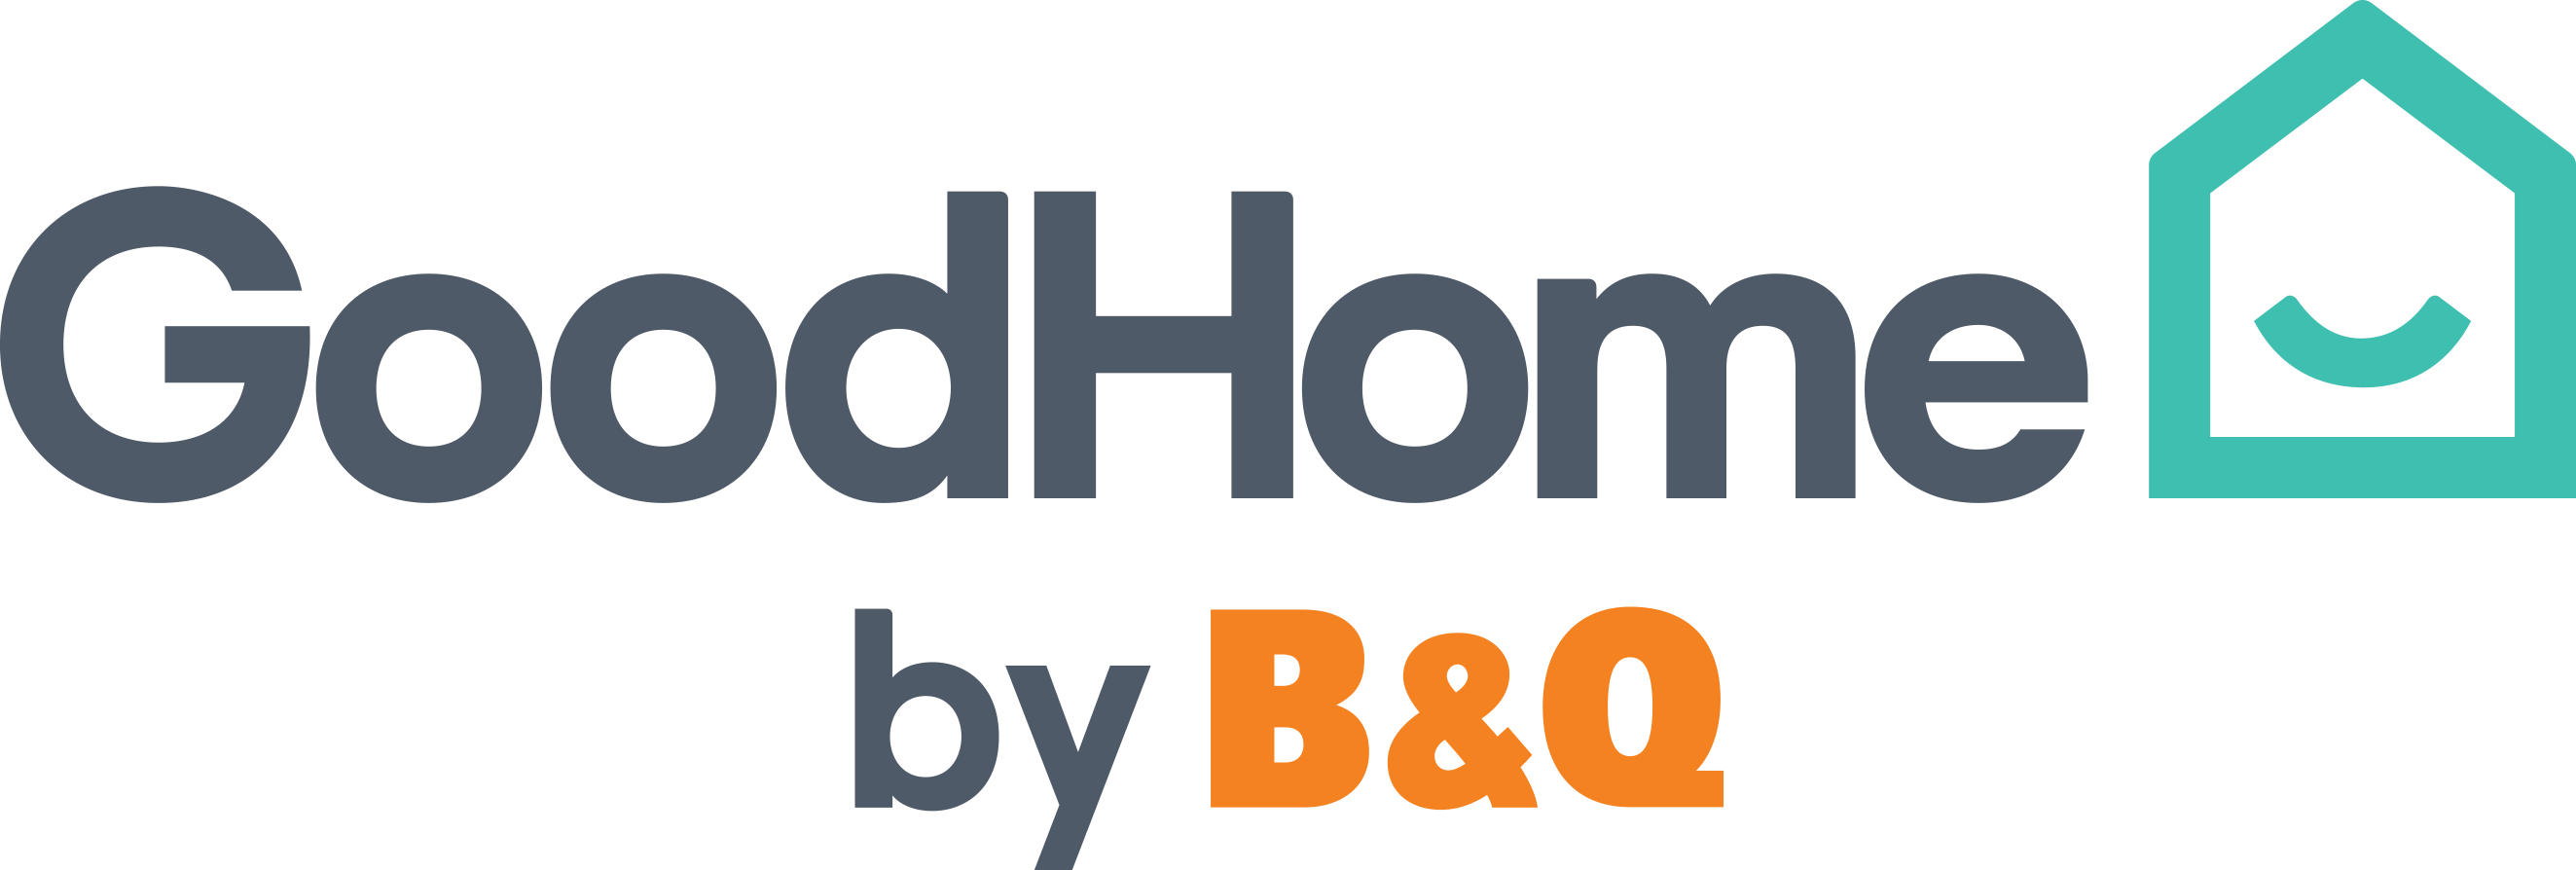 B&Q Good Home Logo